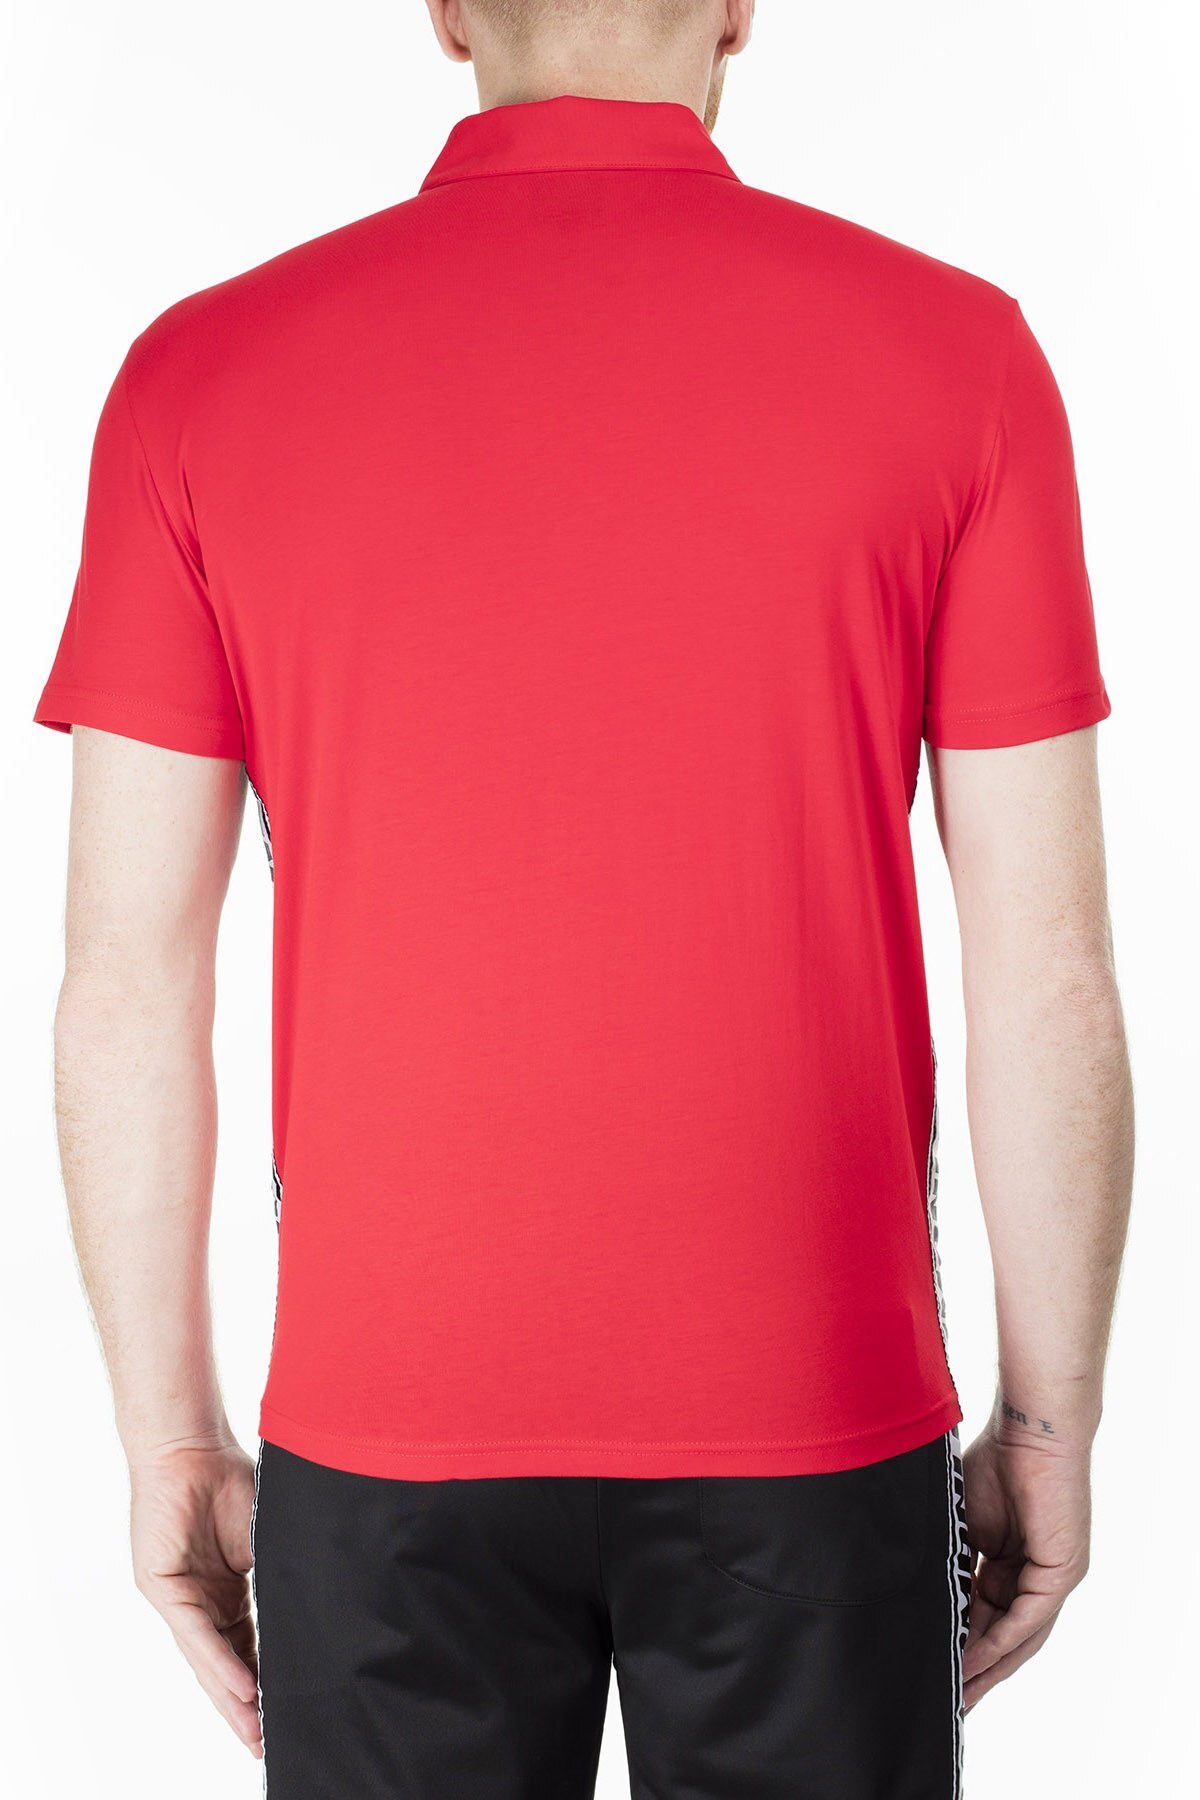 Armani Exchange T Shirt Erkek Polo 3HZFFM ZJBVZ 1401 KIRMIZI